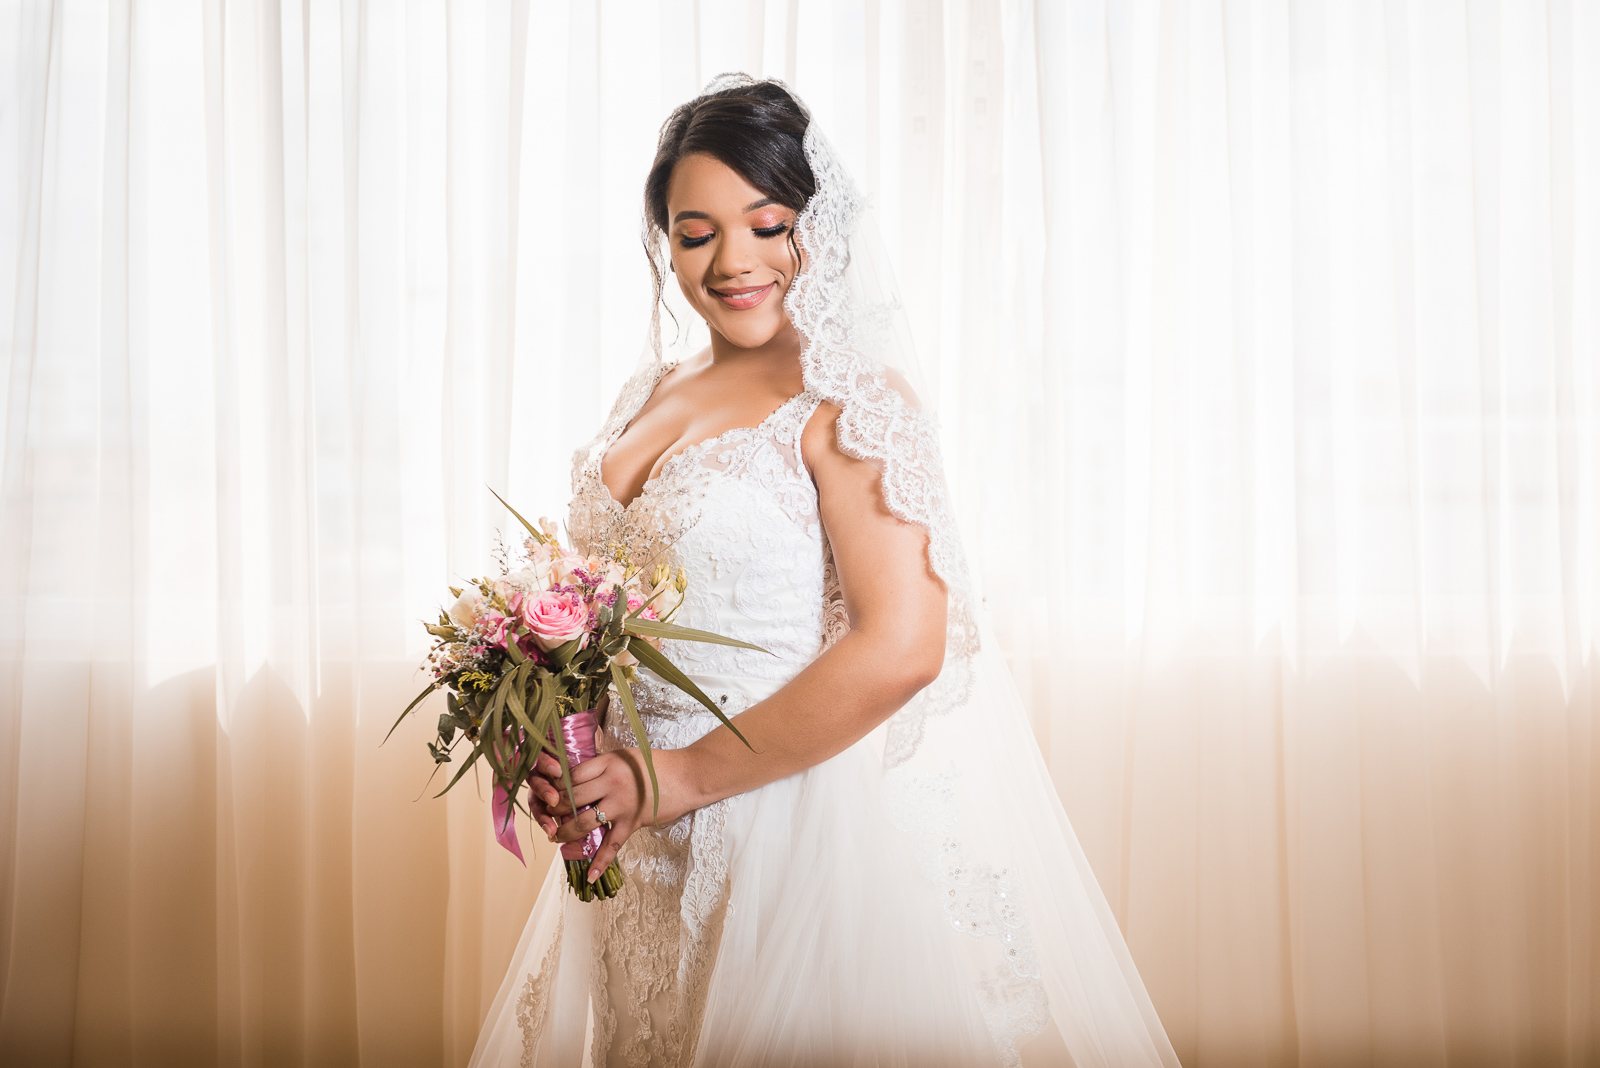 Fotos de getting ready o vistiendose de la novia para bodas en Republica Dominicana por el fotografo dominicano Greg Dotel Photography